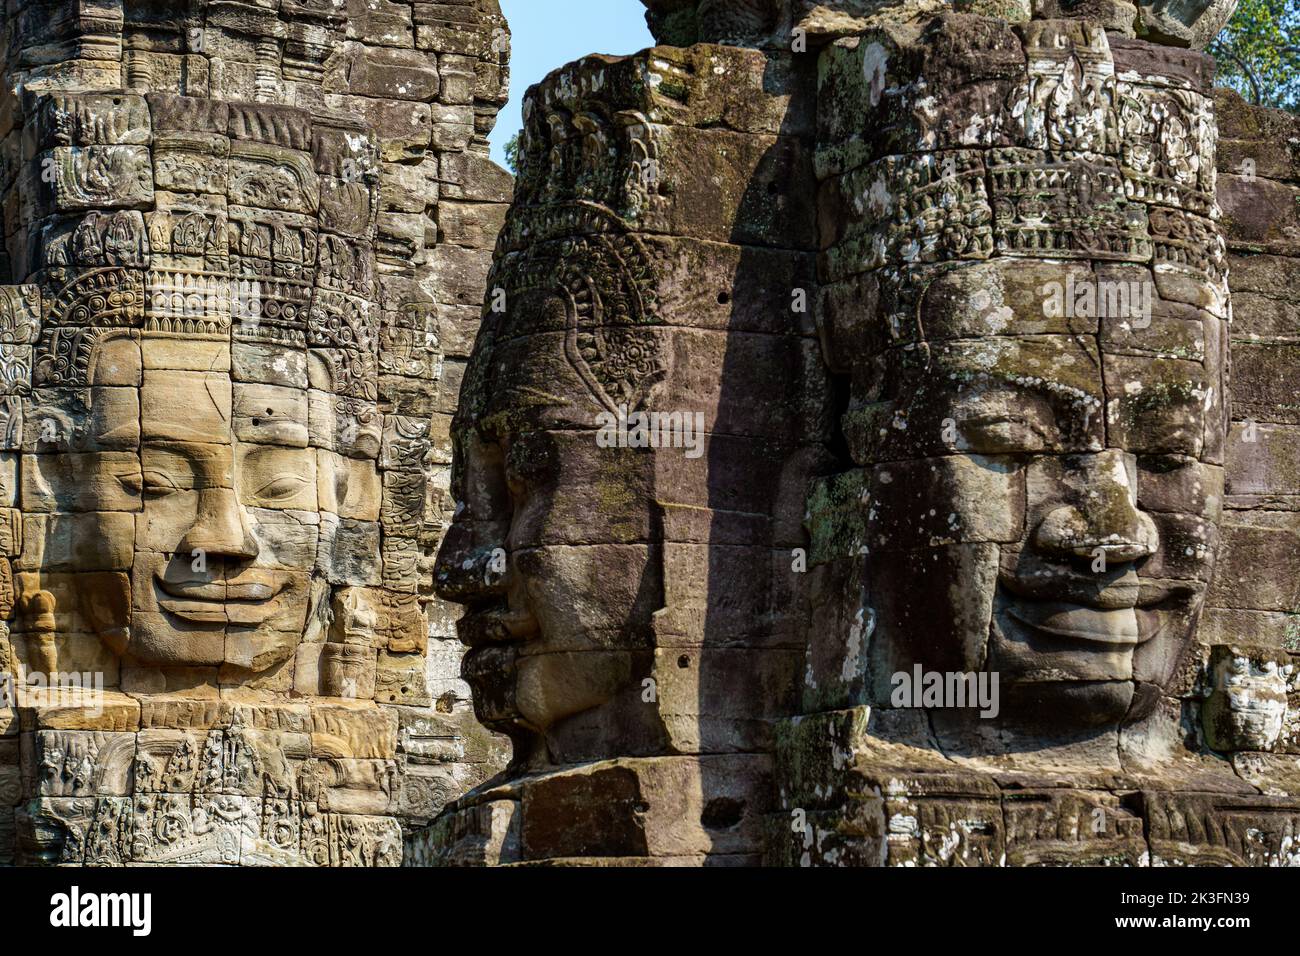 Cambodge. Siem Reap. Le parc archéologique d'Angkor. Chefs de sculpture de Bouddha au temple de Bayon 12th siècle temple hindou Banque D'Images